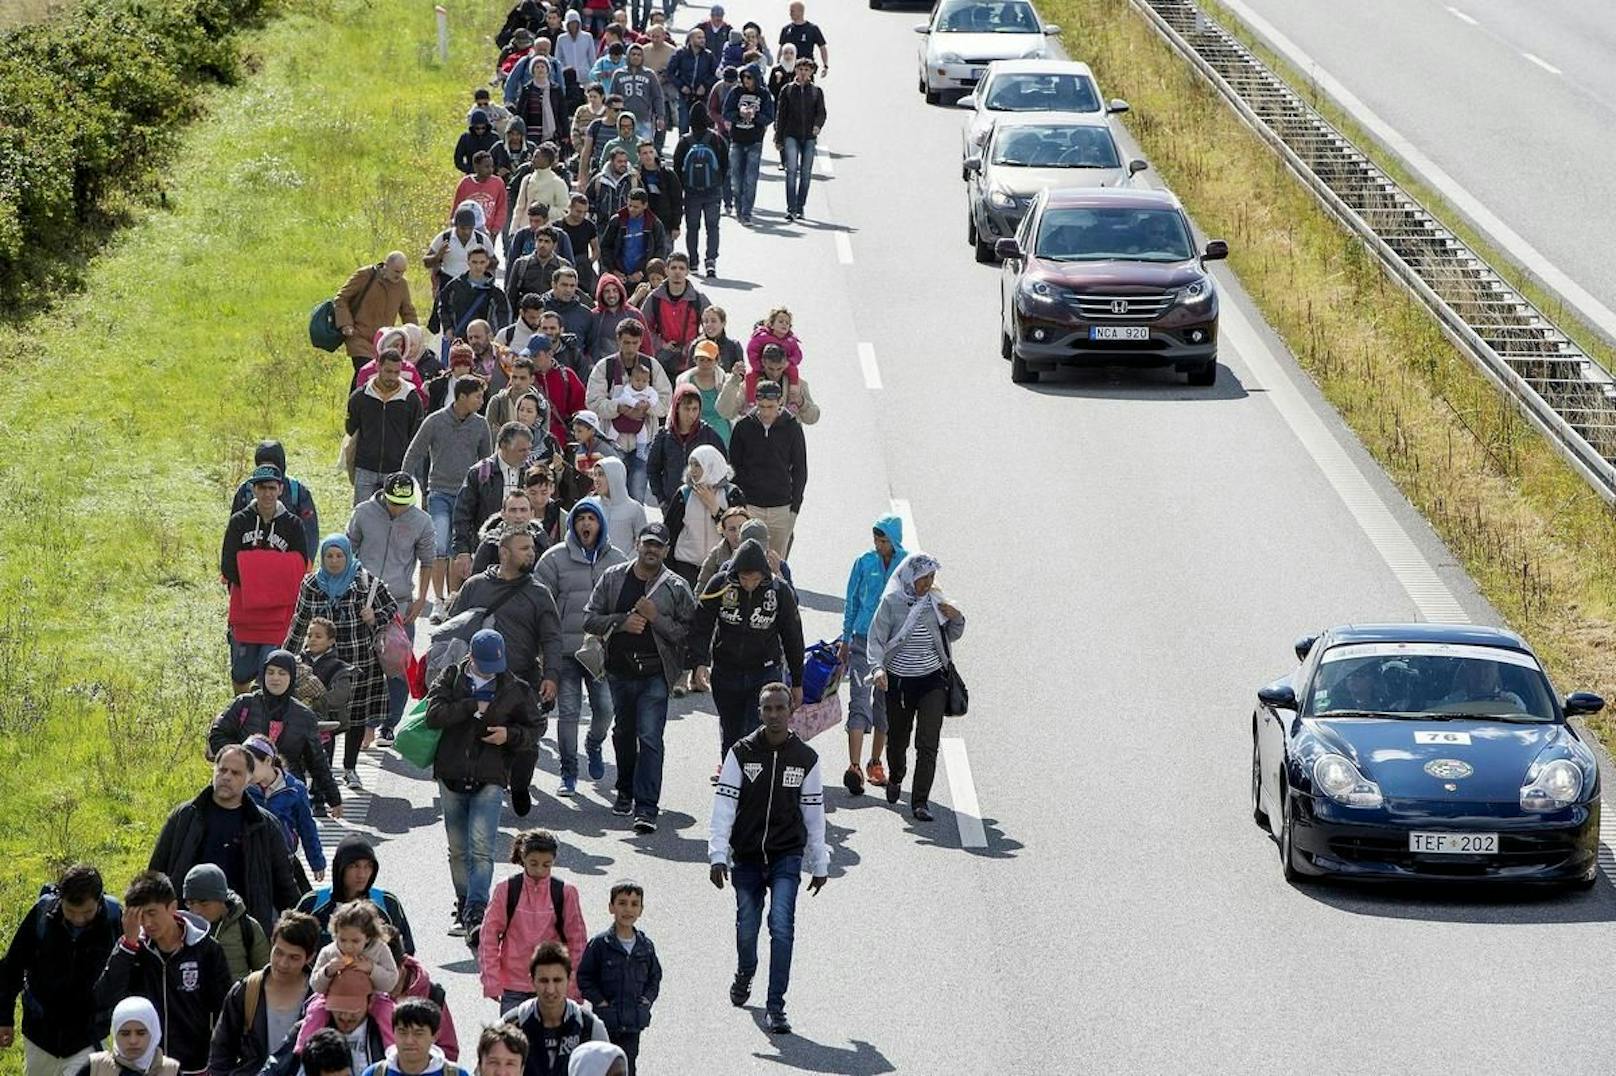 Dänemark will sein Asylrecht verschärfen. Wie andernorts auch, wollten 2015 besonders viele Menschen nach Dänemark. Seither sind die Asylanträge zurückgegangen – und nun will die Regierung sie gar auf null reduzieren.